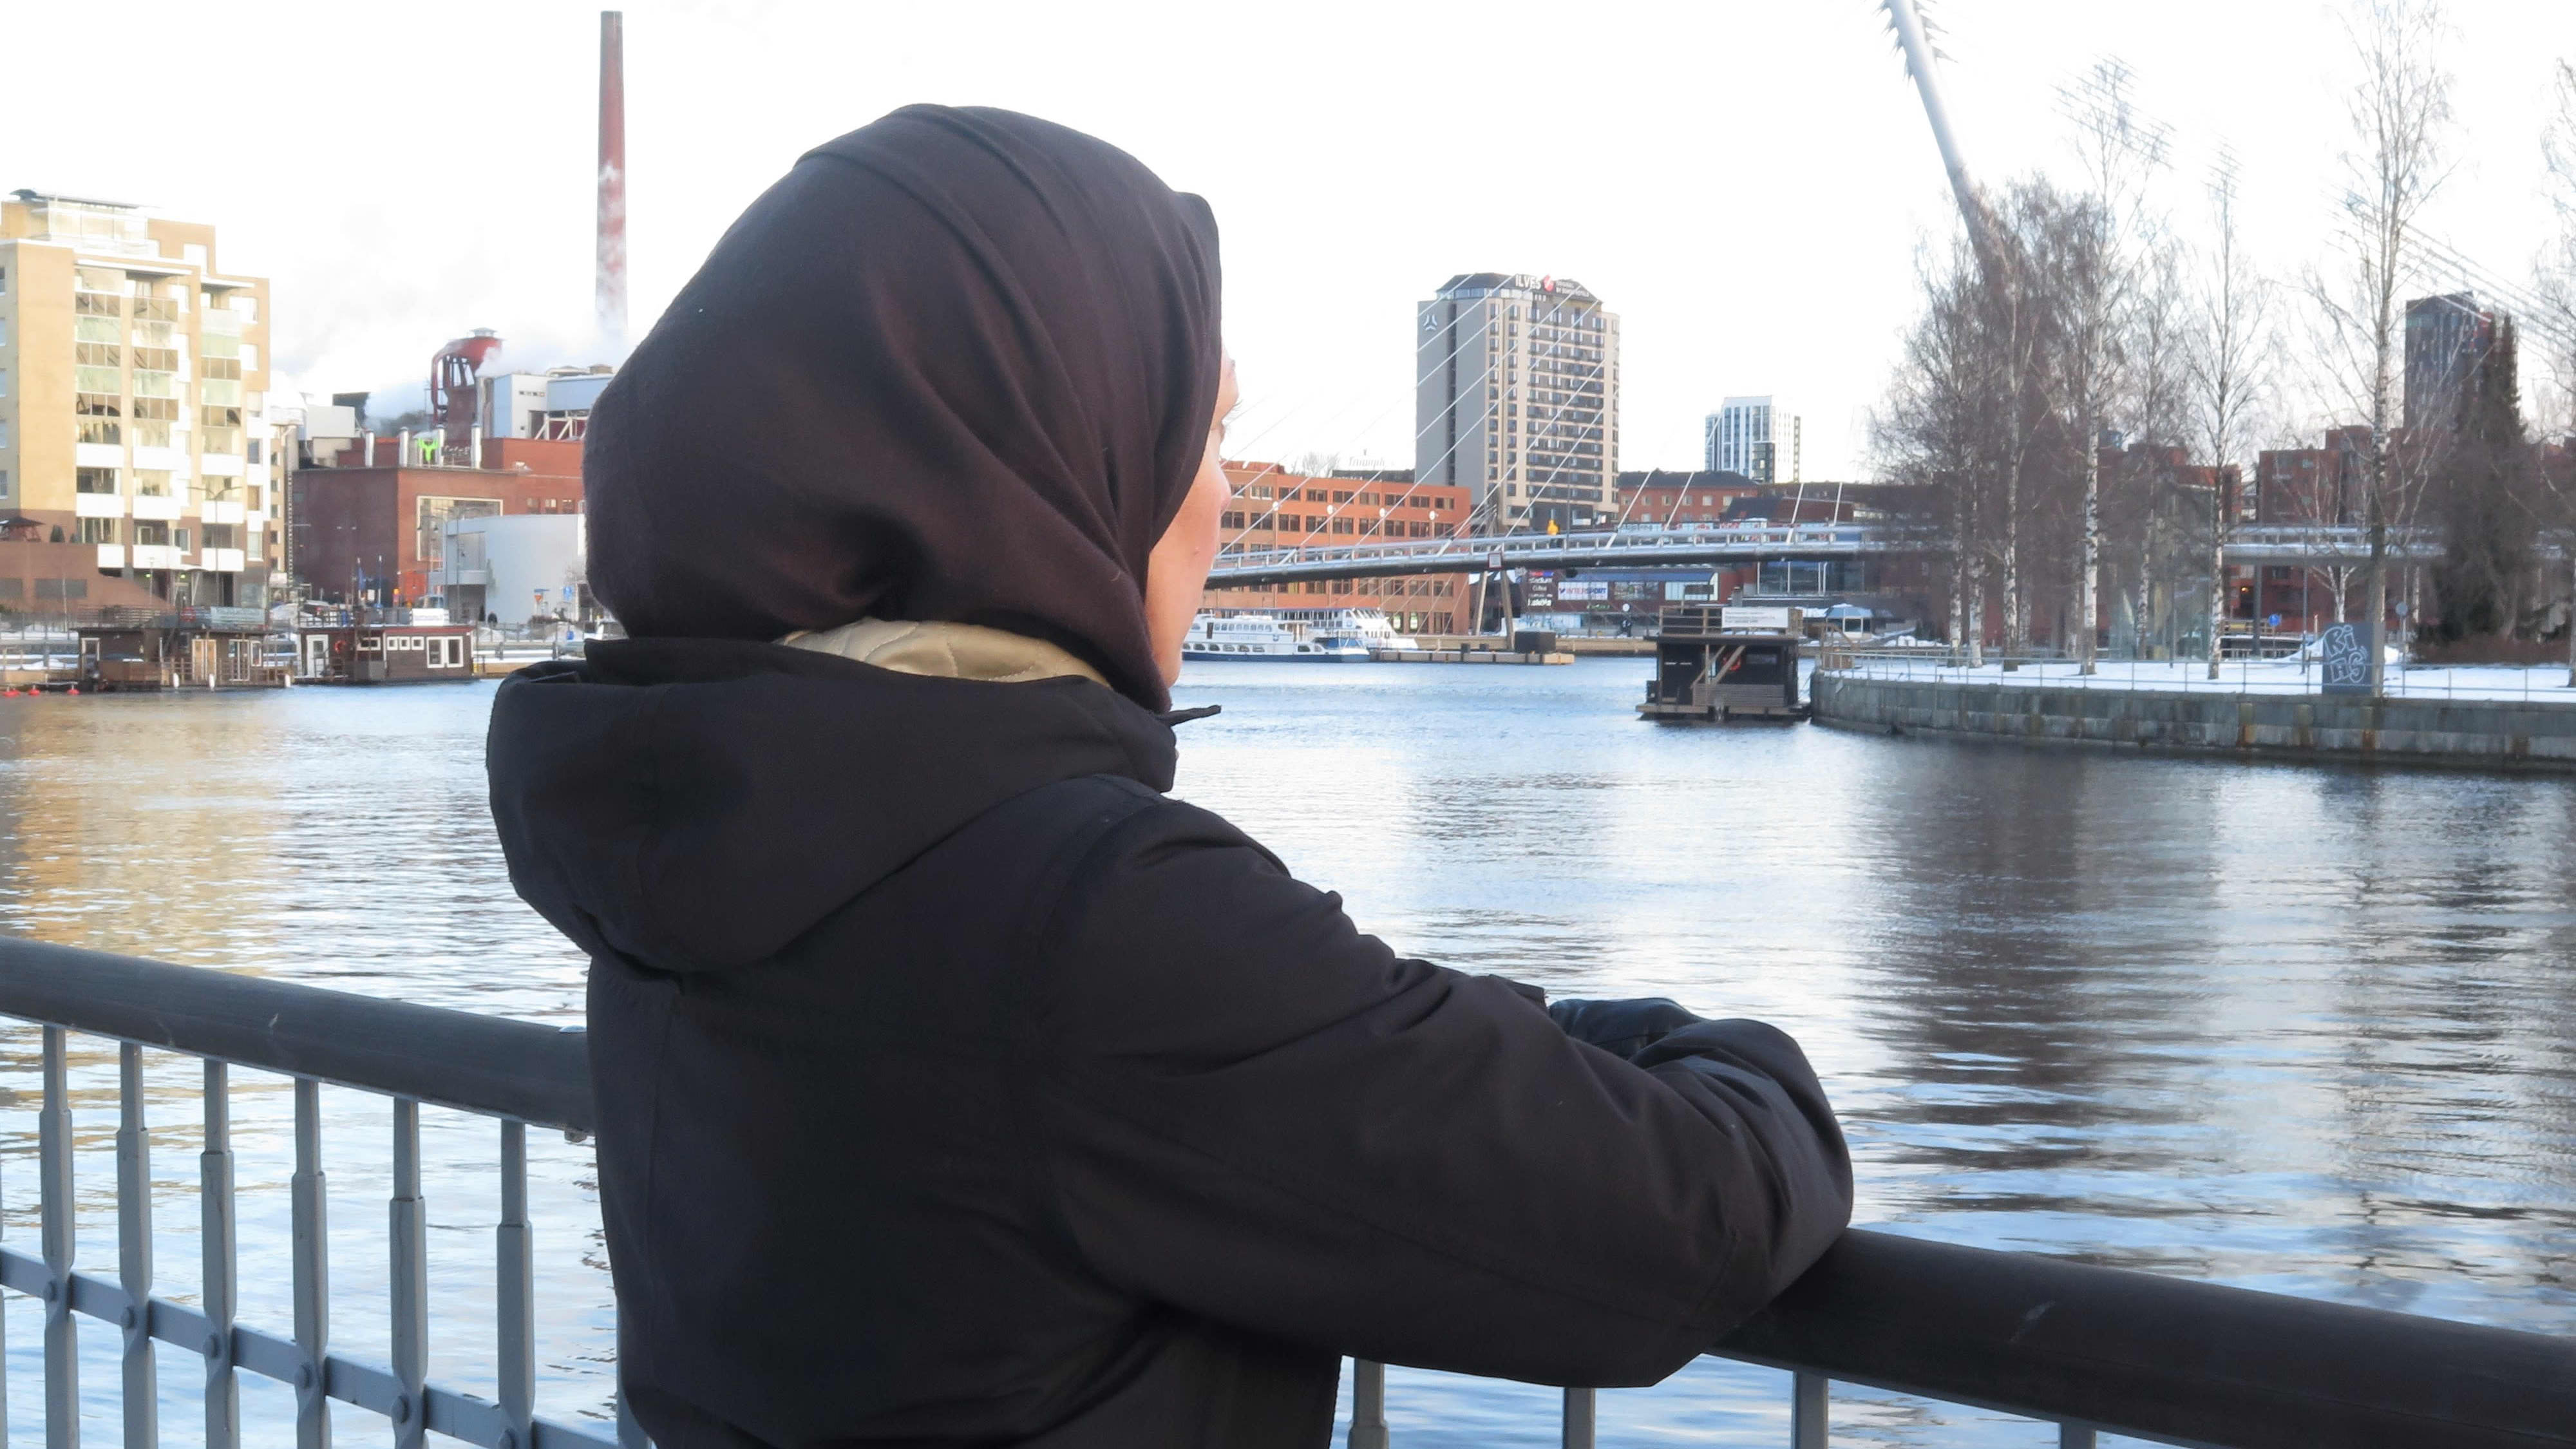 Kunniaksi-hankkeen projektityöntekijä Doaa Al-Shmes Setlementti Tampere ry:stä nojaa kaiteeseen Tammerkosken rannalla.